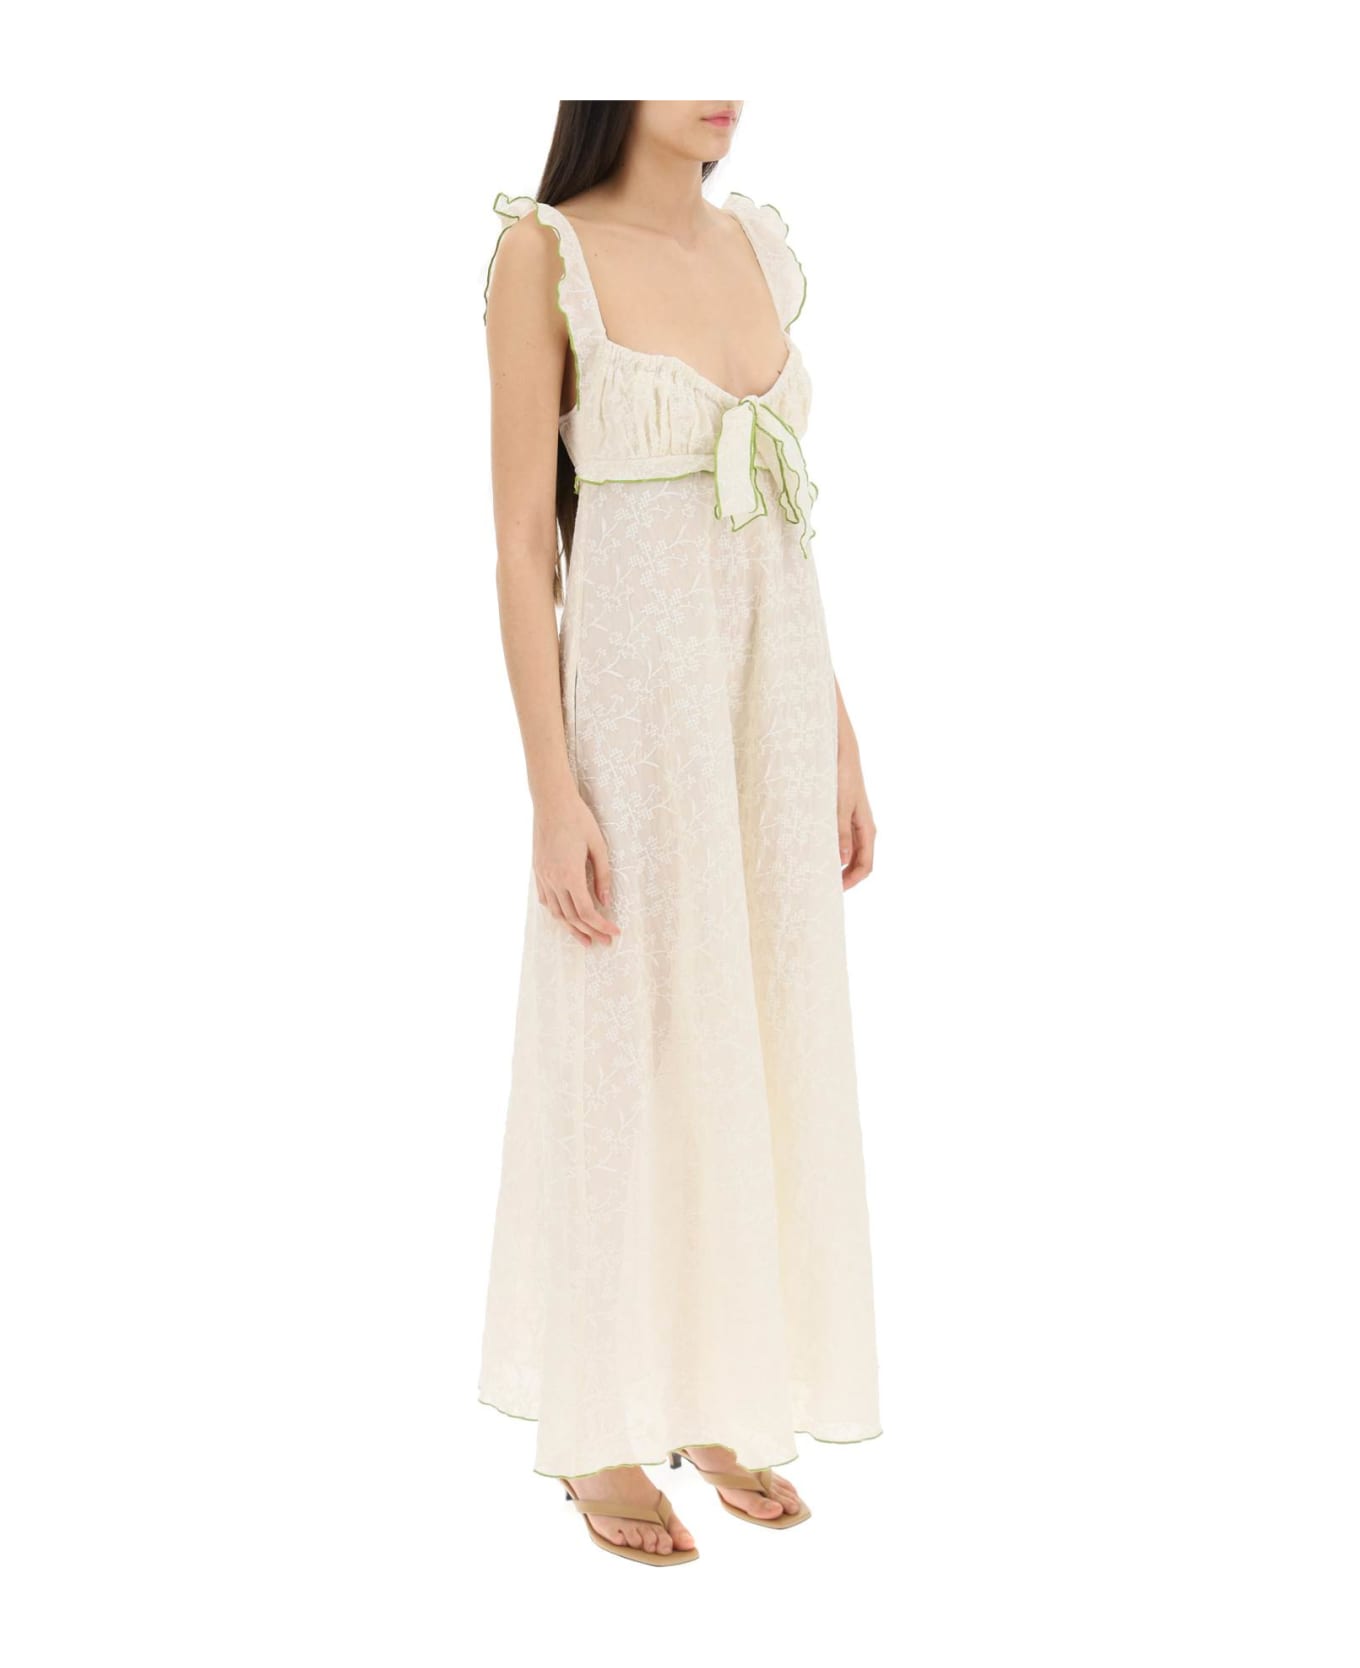 SIEDRES 'tulla' Long Dress - WHITE (Beige)